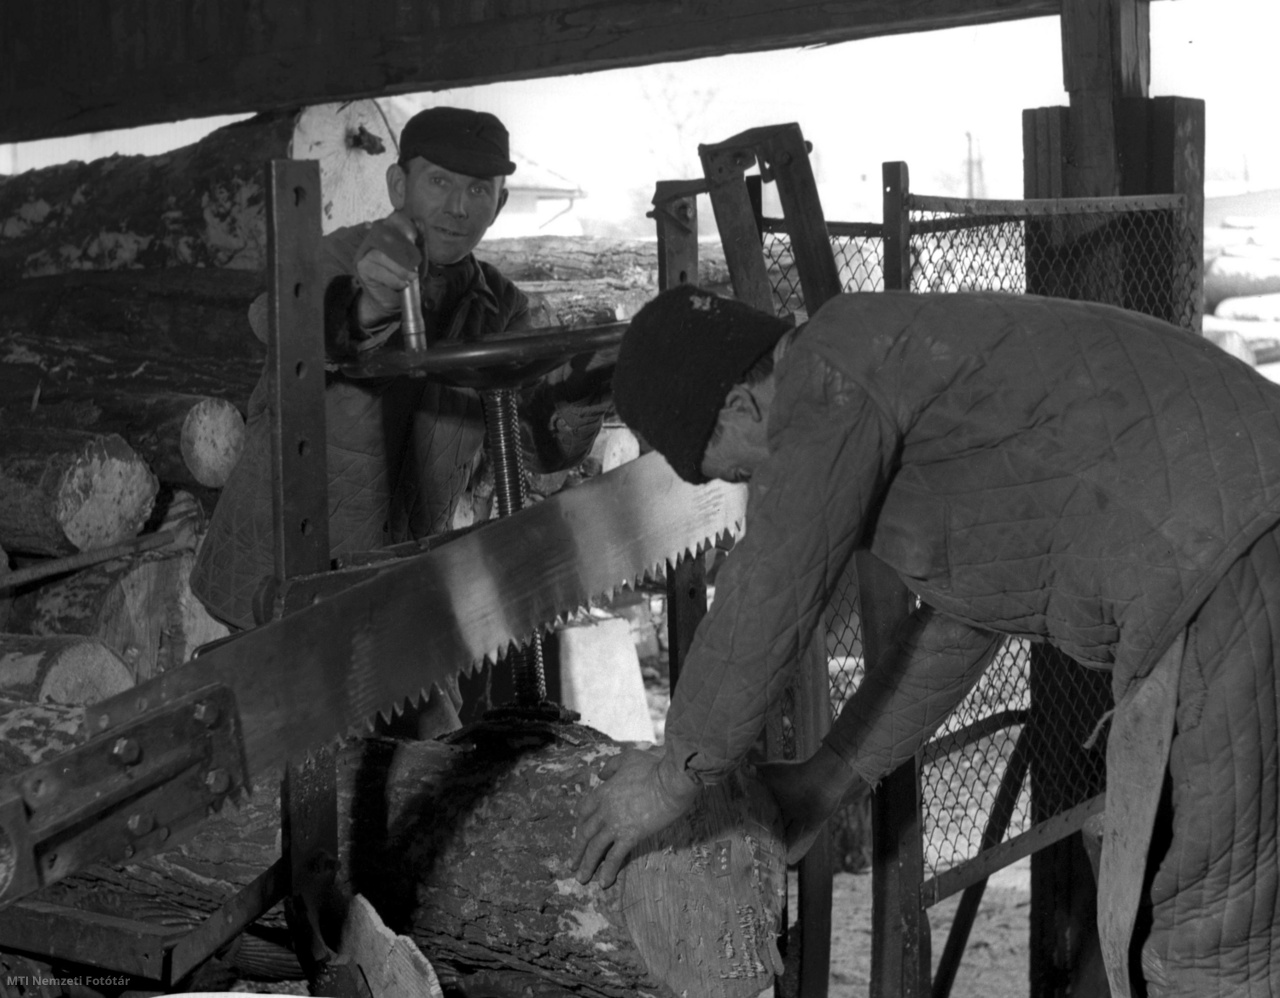 Kecskemét, 1956. február 5. Miskolci Pál és Pácsa József rönkösök fűrész alá készítik a rönkfát a Kecskeméti Gyufagyár fűrészüzemében.